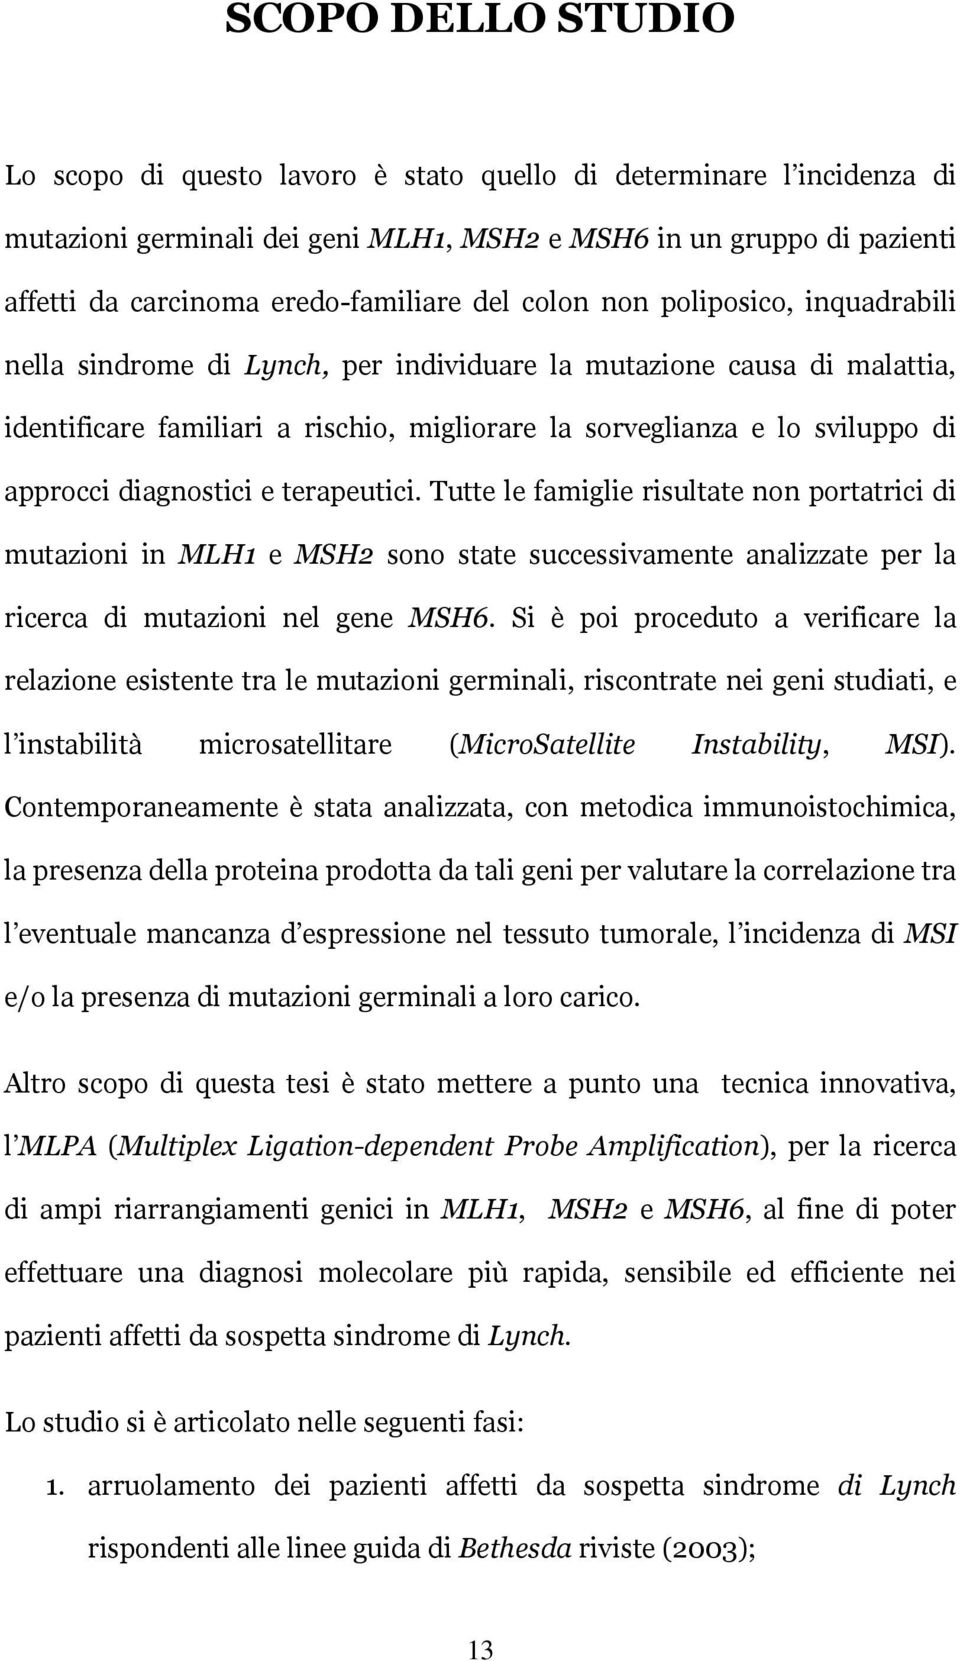 diagnostici e terapeutici. Tutte le famiglie risultate non portatrici di mutazioni in MLH1 e MSH2 sono state successivamente analizzate per la ricerca di mutazioni nel gene MSH6.